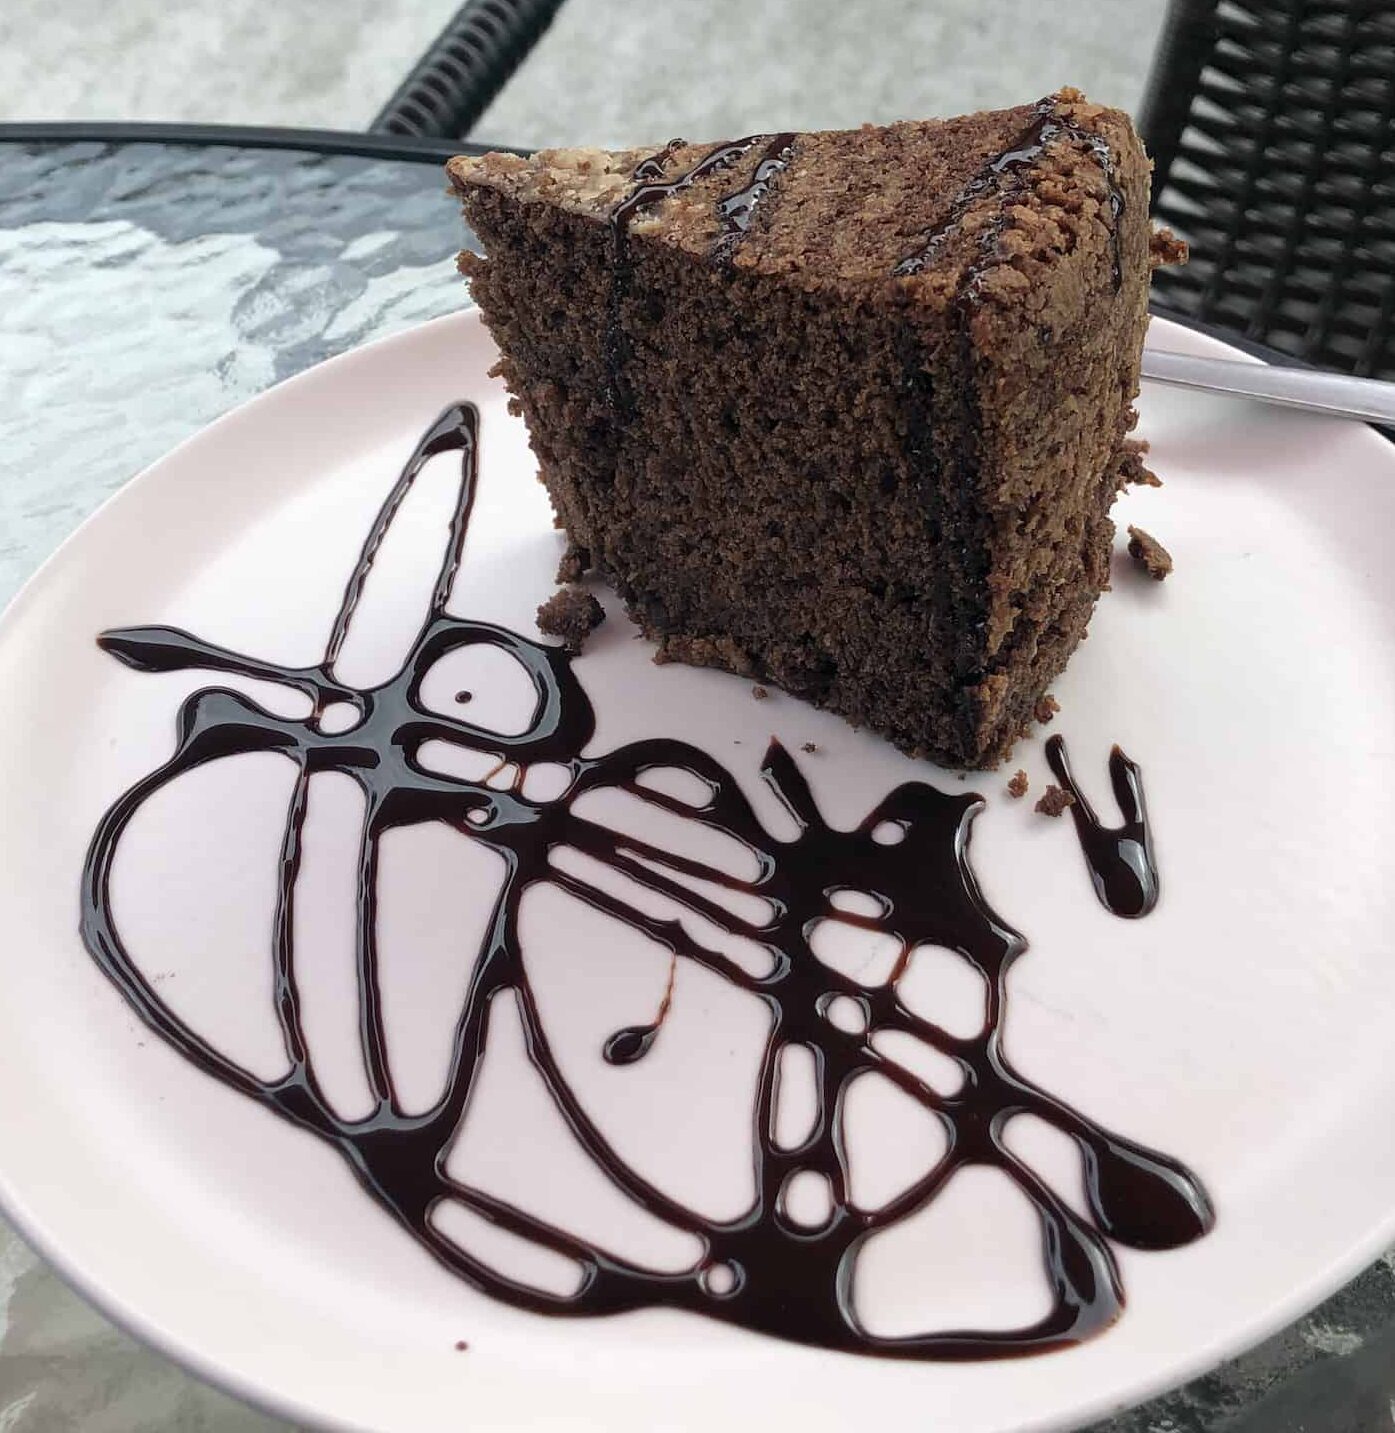 Chocolate cake at Mirador San Antonio